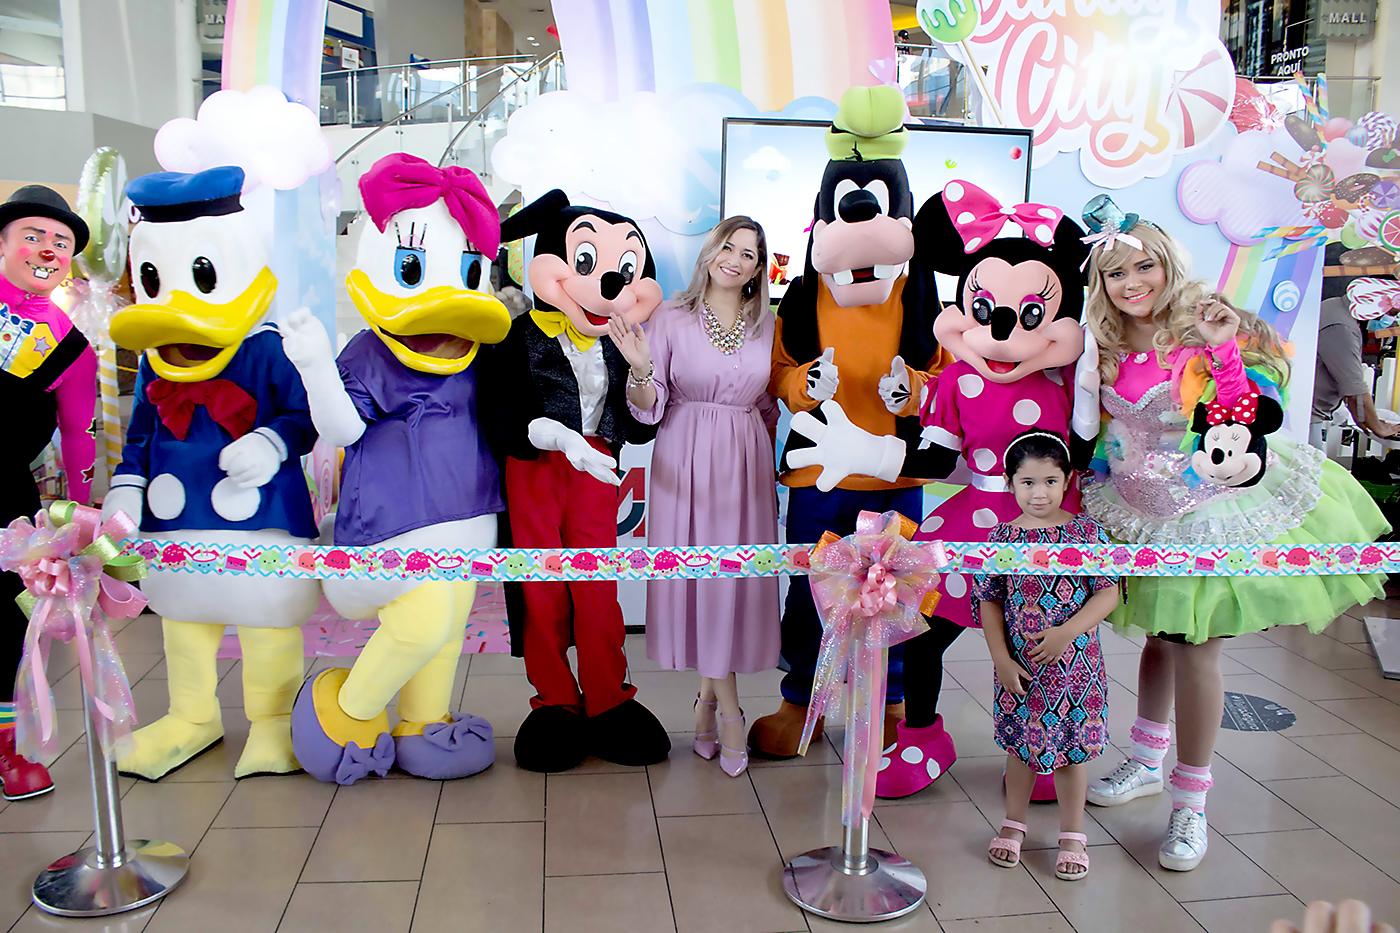 $!Gisselle Marín, coordinadora de mercadeo de City Mall, en compañía de los personajes de Disney Friends durante la inauguración del parque temático “Candy City”.